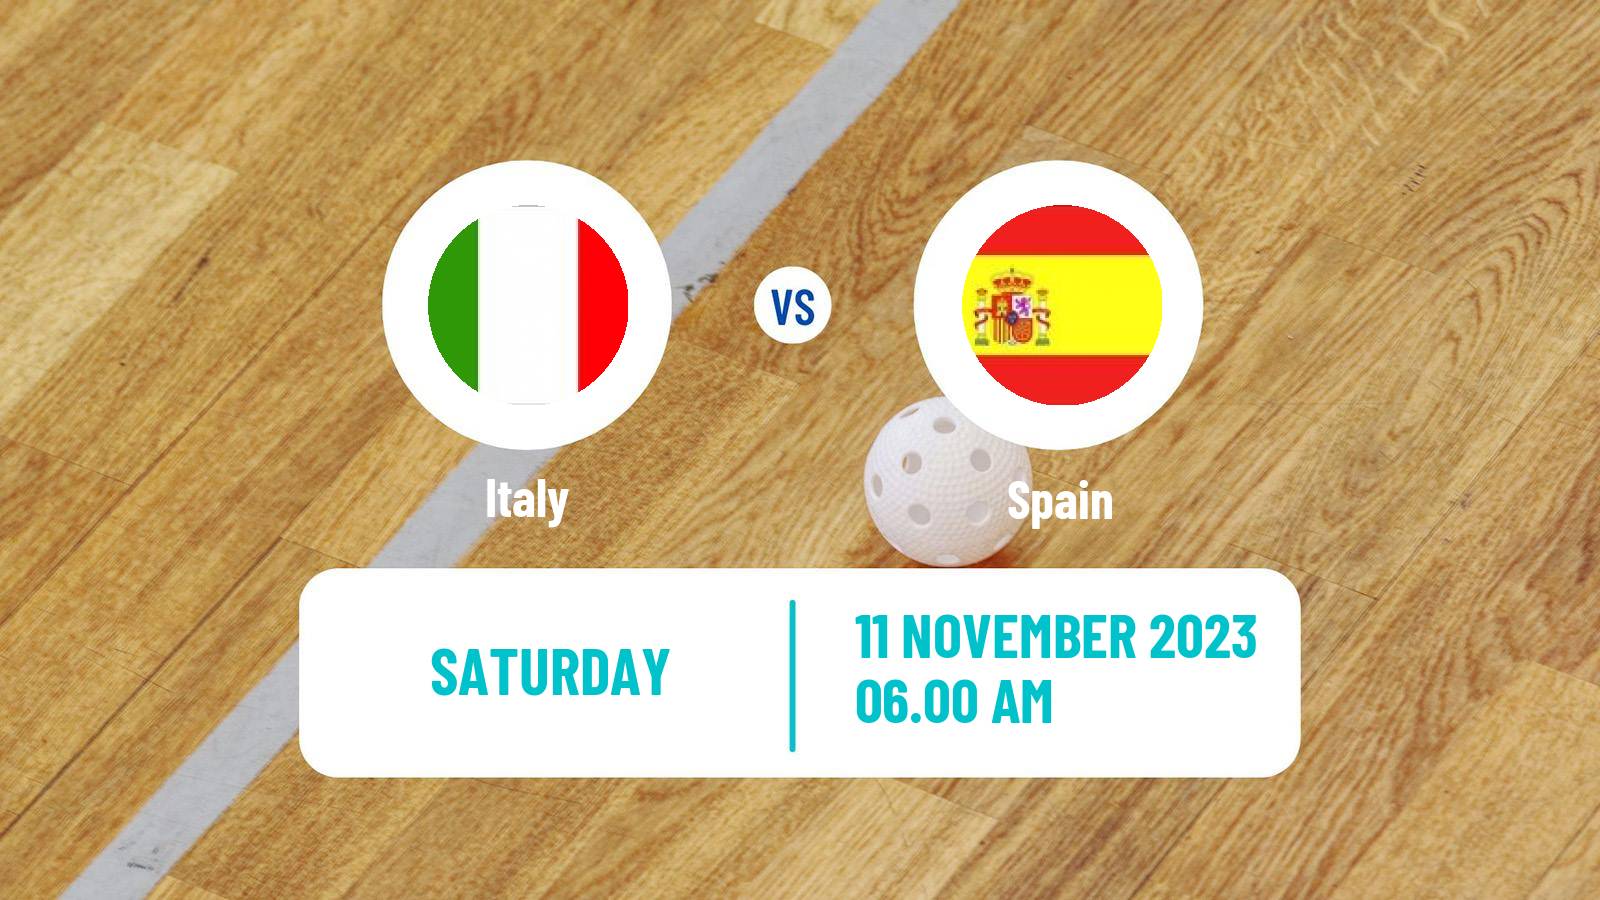 Floorball Friendly International Floorball Italy - Spain